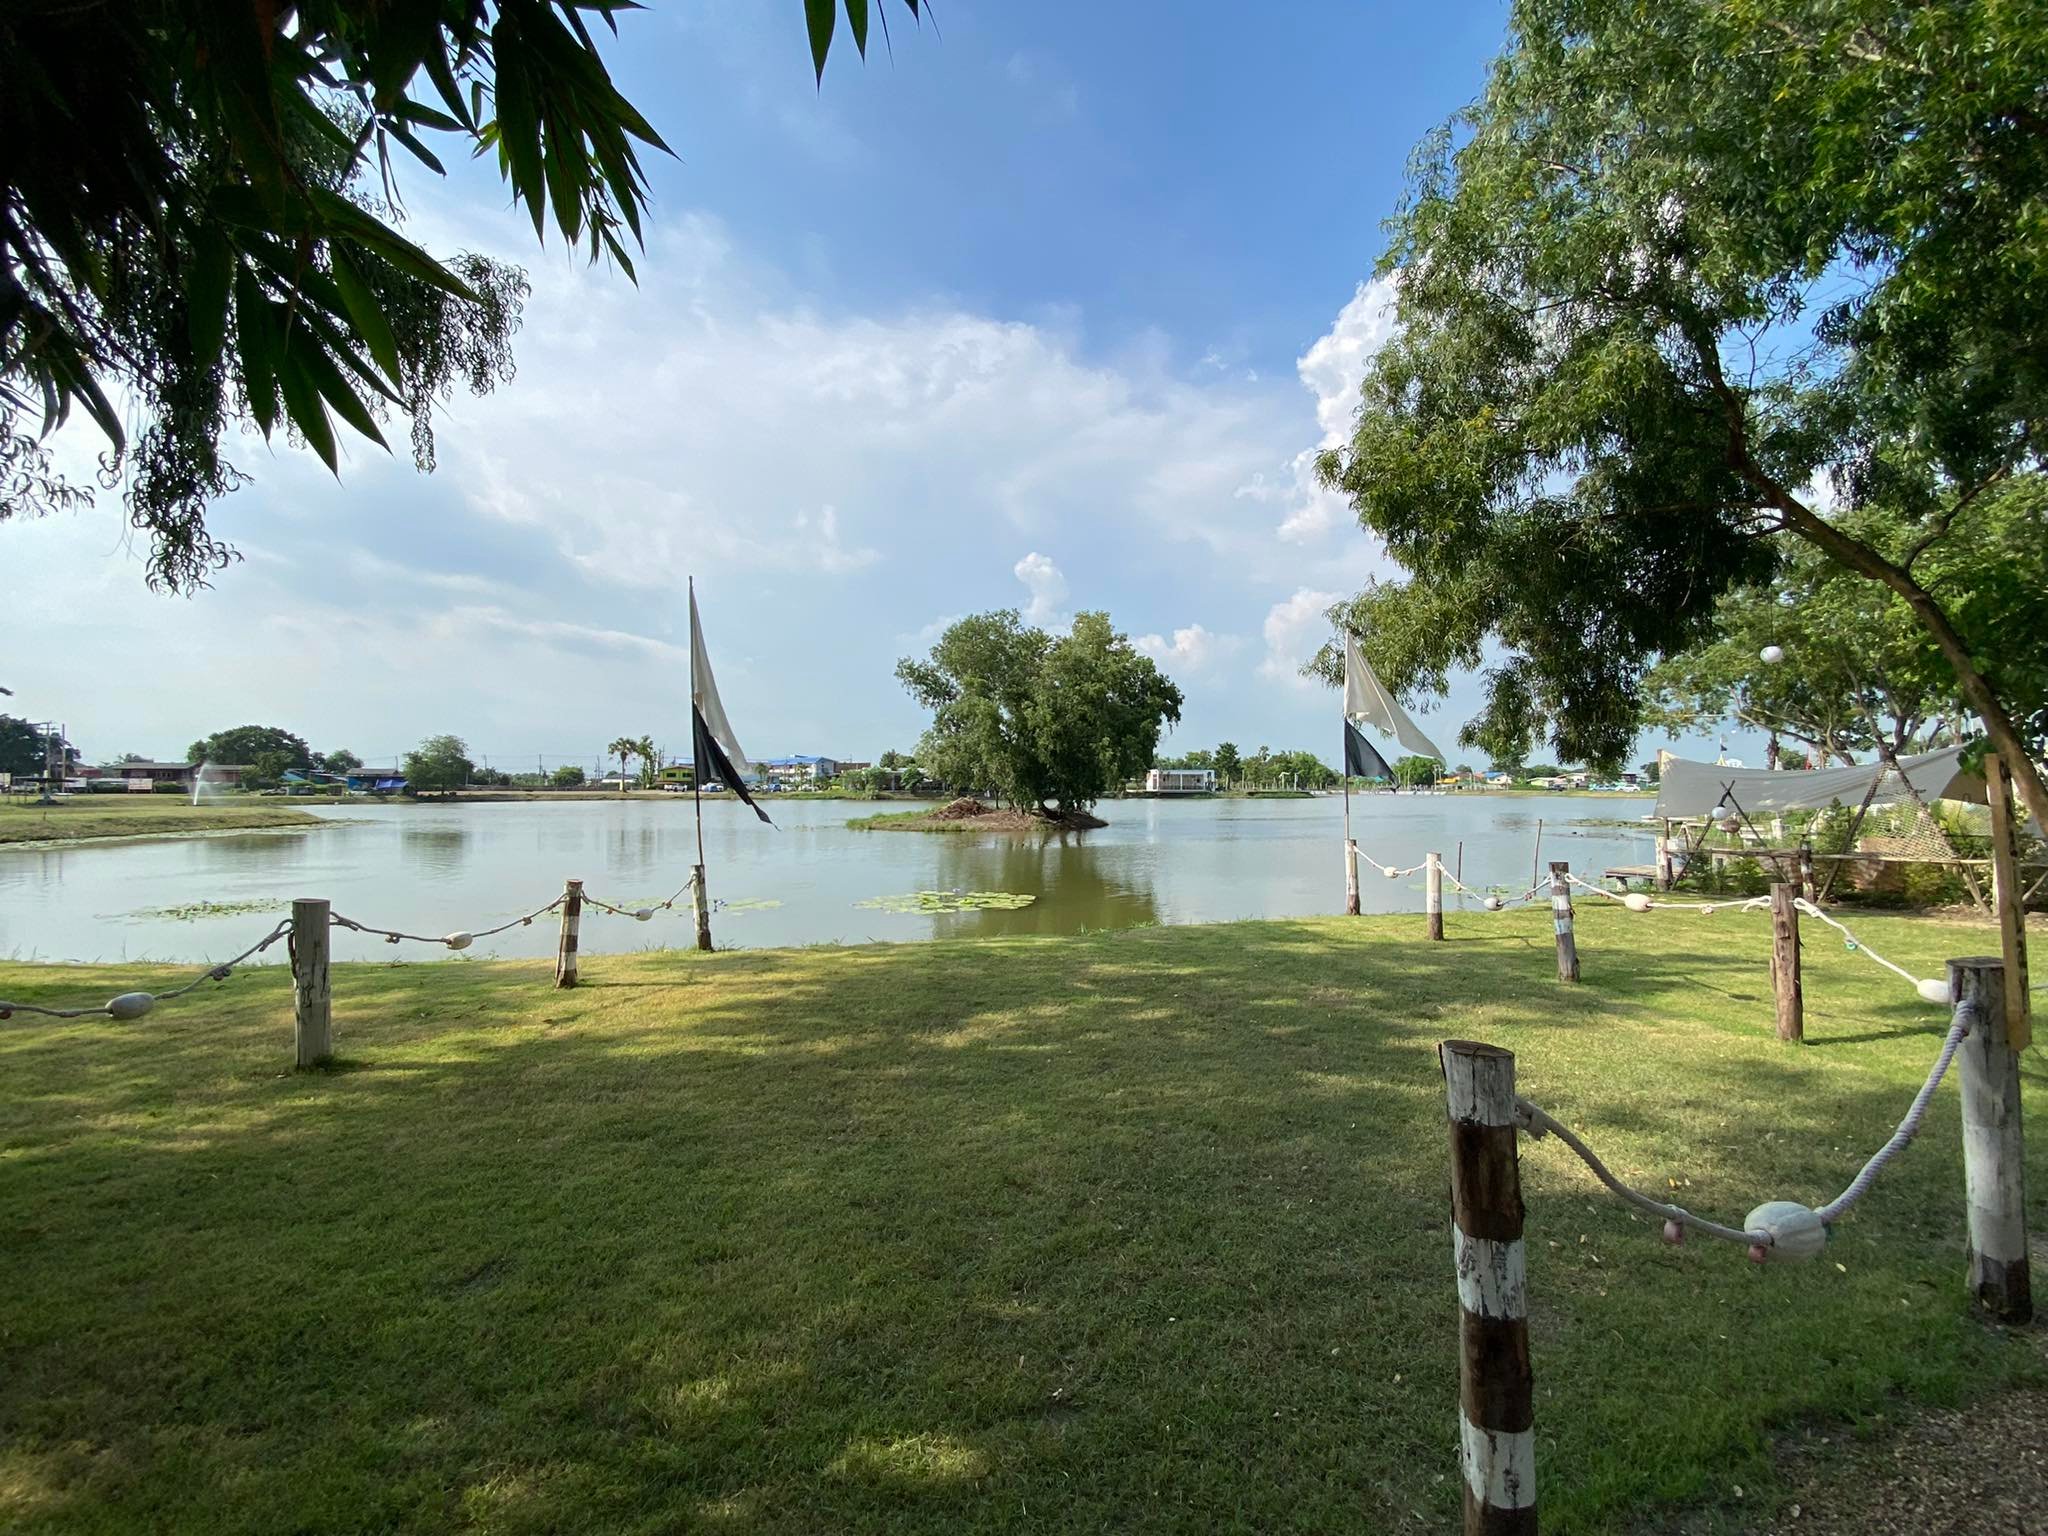 รูป James 500 City Camp Romklao Lagoon